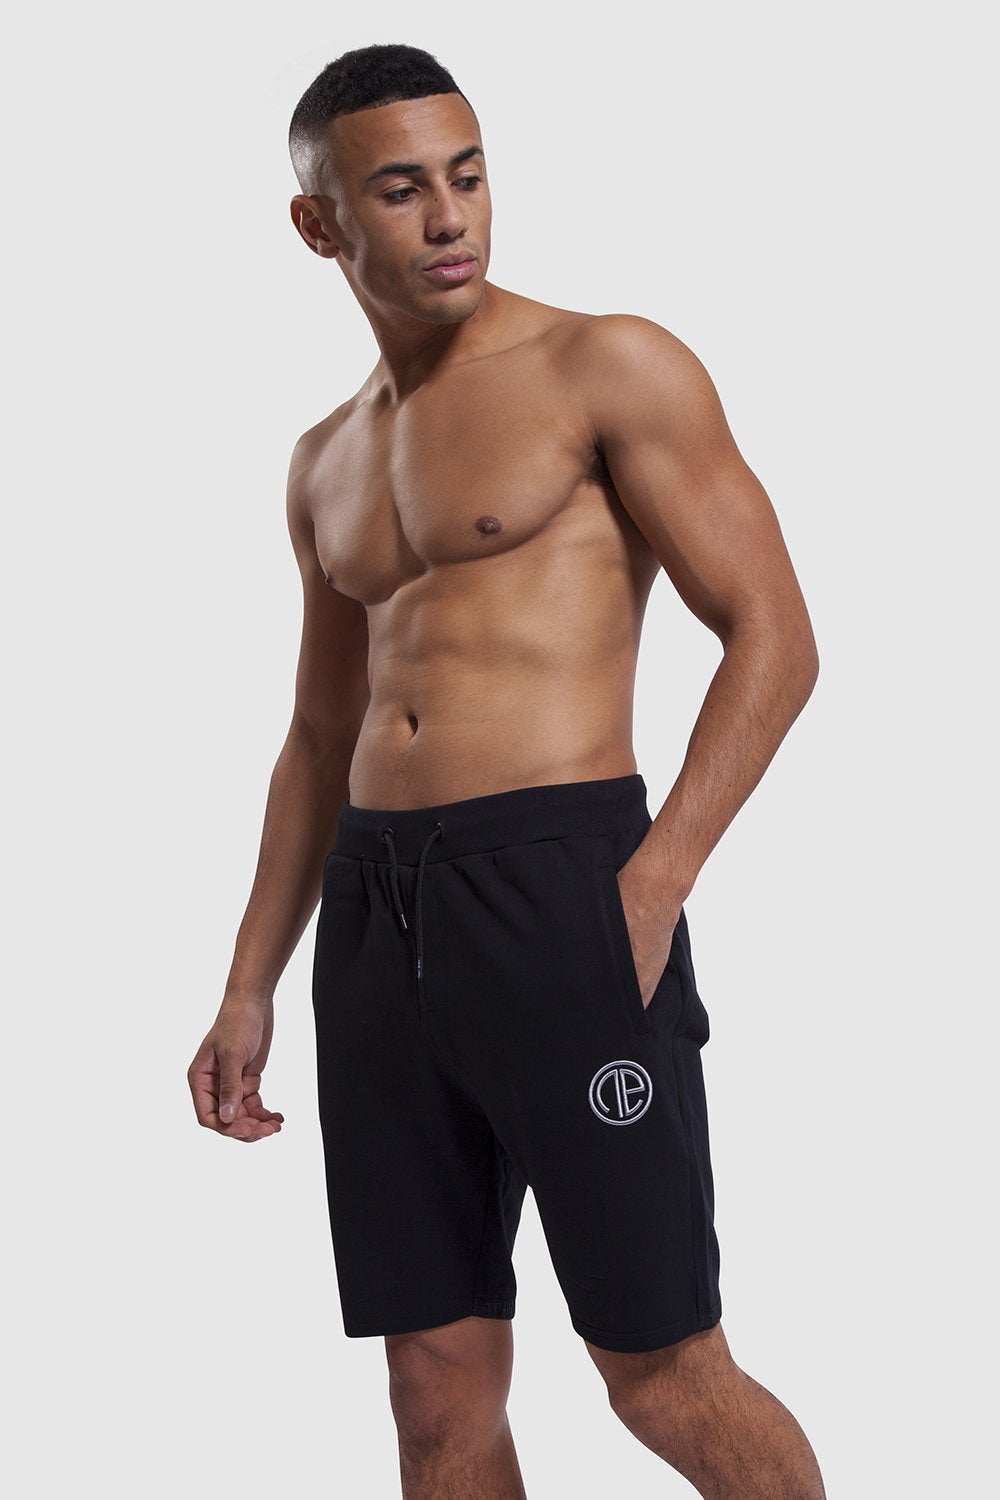 Black Iverson shorts for men